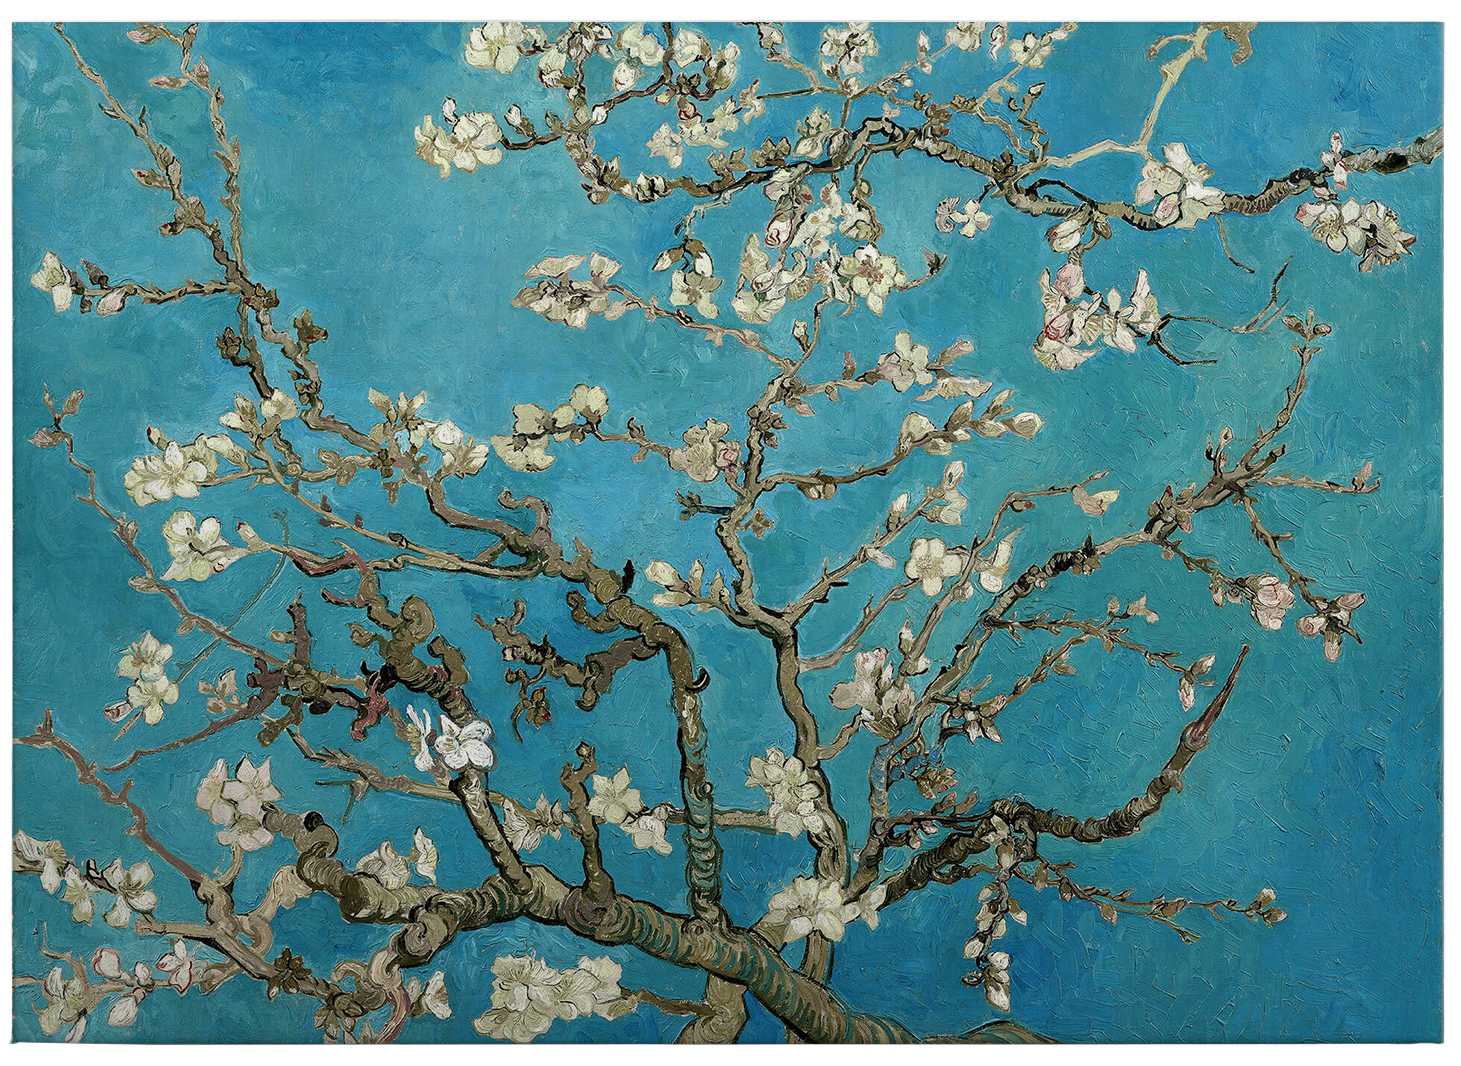             Quadro su tela "Mandorli in fiore" di Van Gogh - 0,70 m x 0,50 m
        